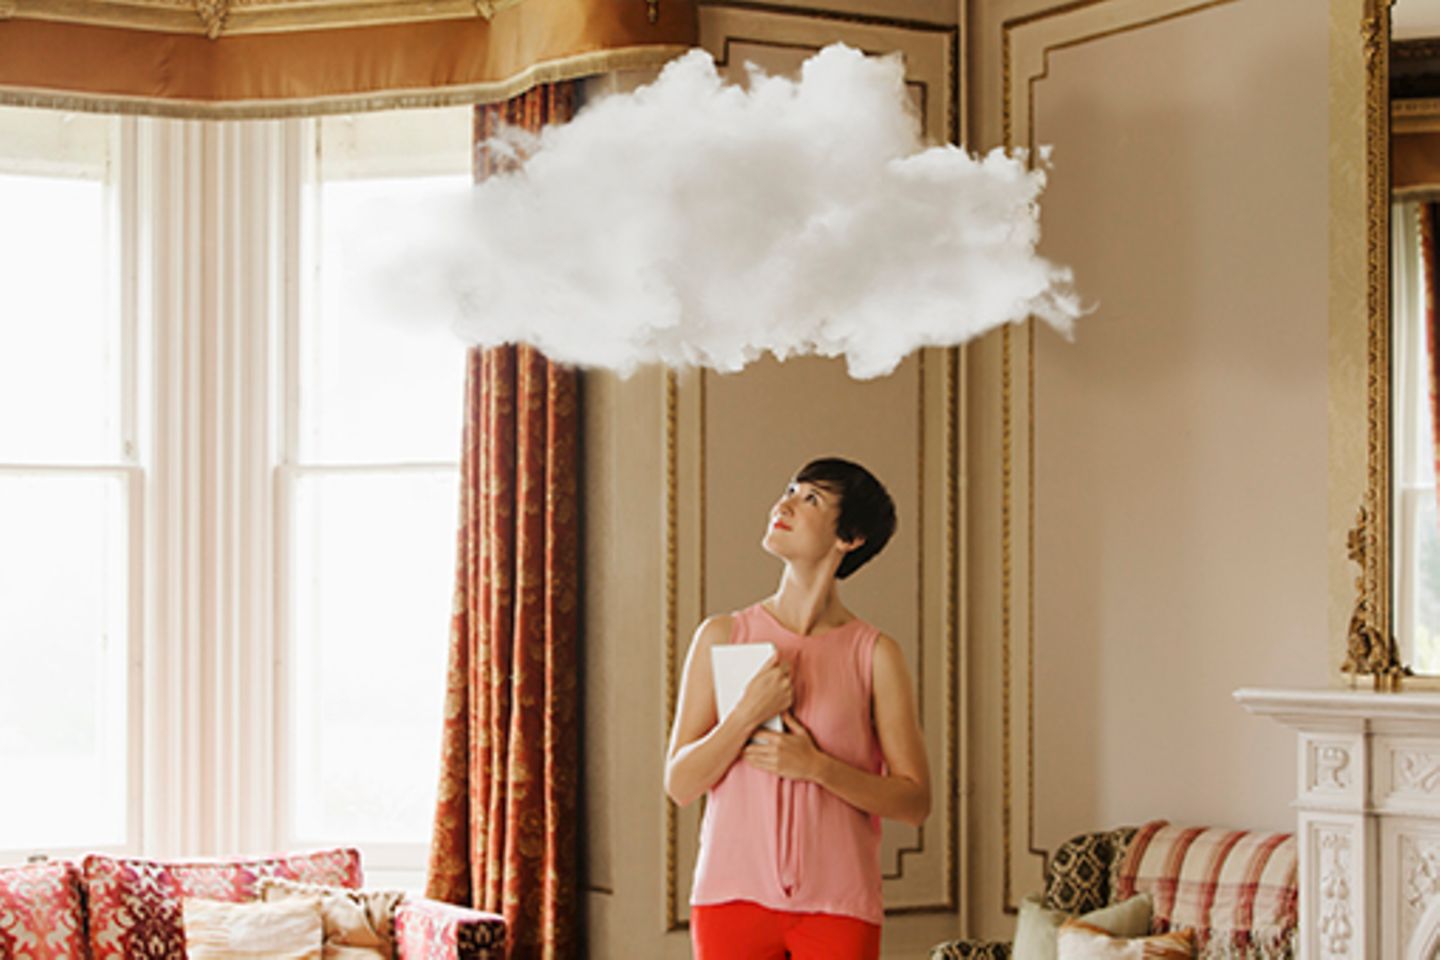 Frau steht in Wohnzimmer und schaut hoch zu einer kleinen weißen Wolke über ihrem Kopf.